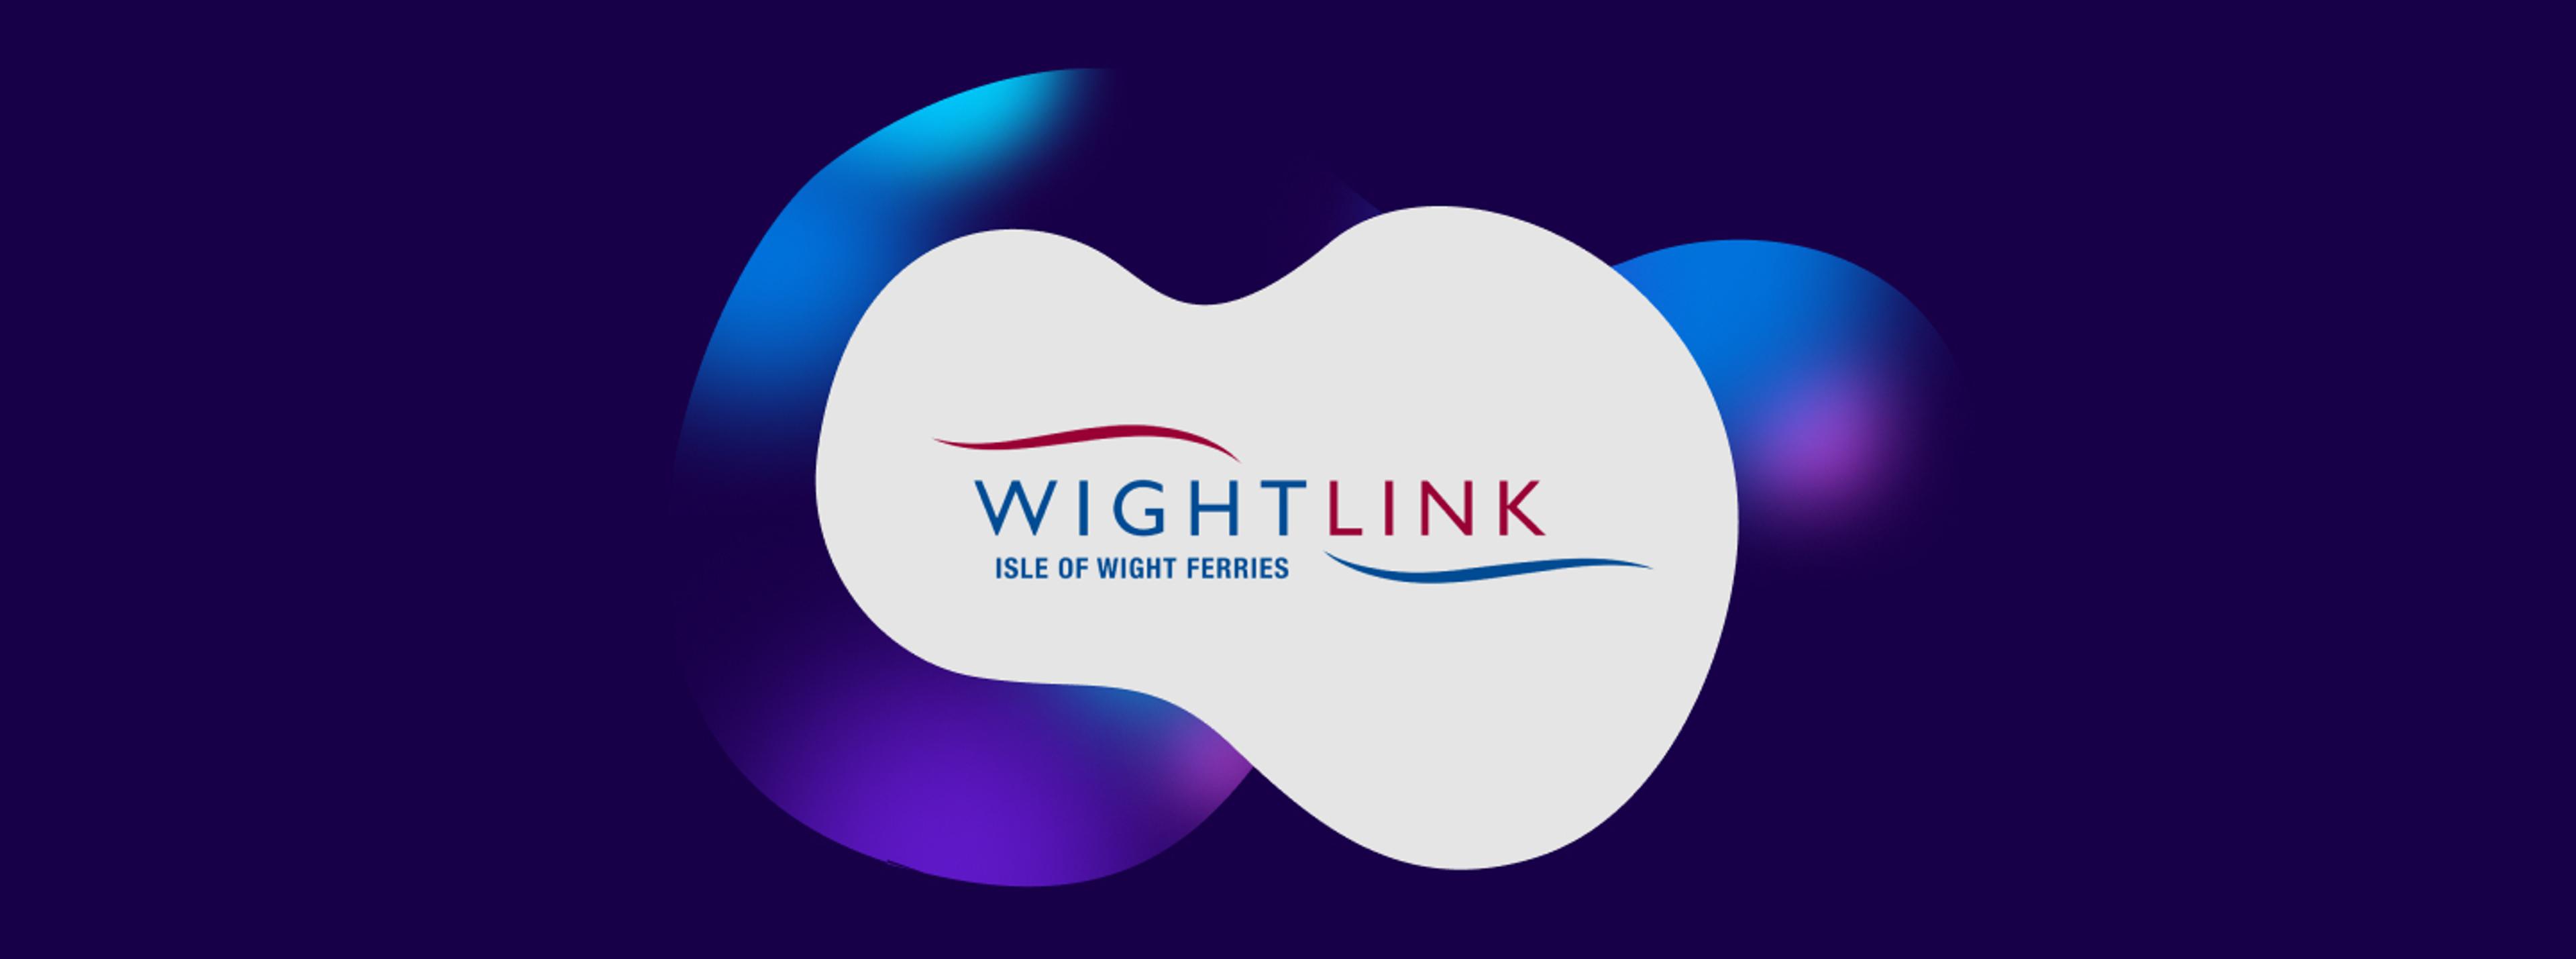 Wightlink logo on white background with a dark blue blob behind it